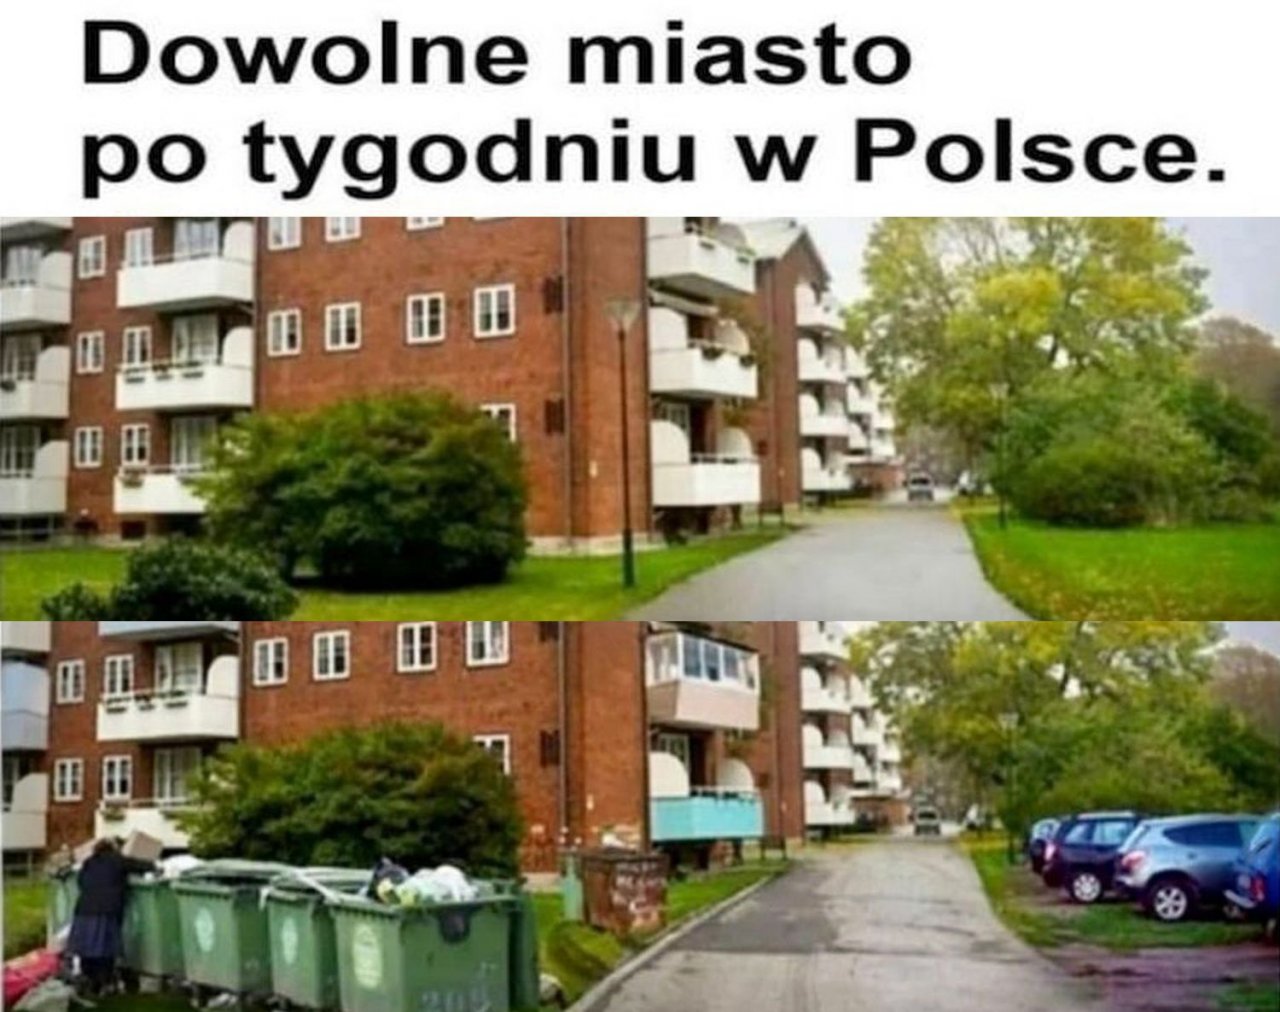 Mem "dowolne miasto po tygodniu w Polsce" robi furorę w sieci! Faktycznie tak jest?